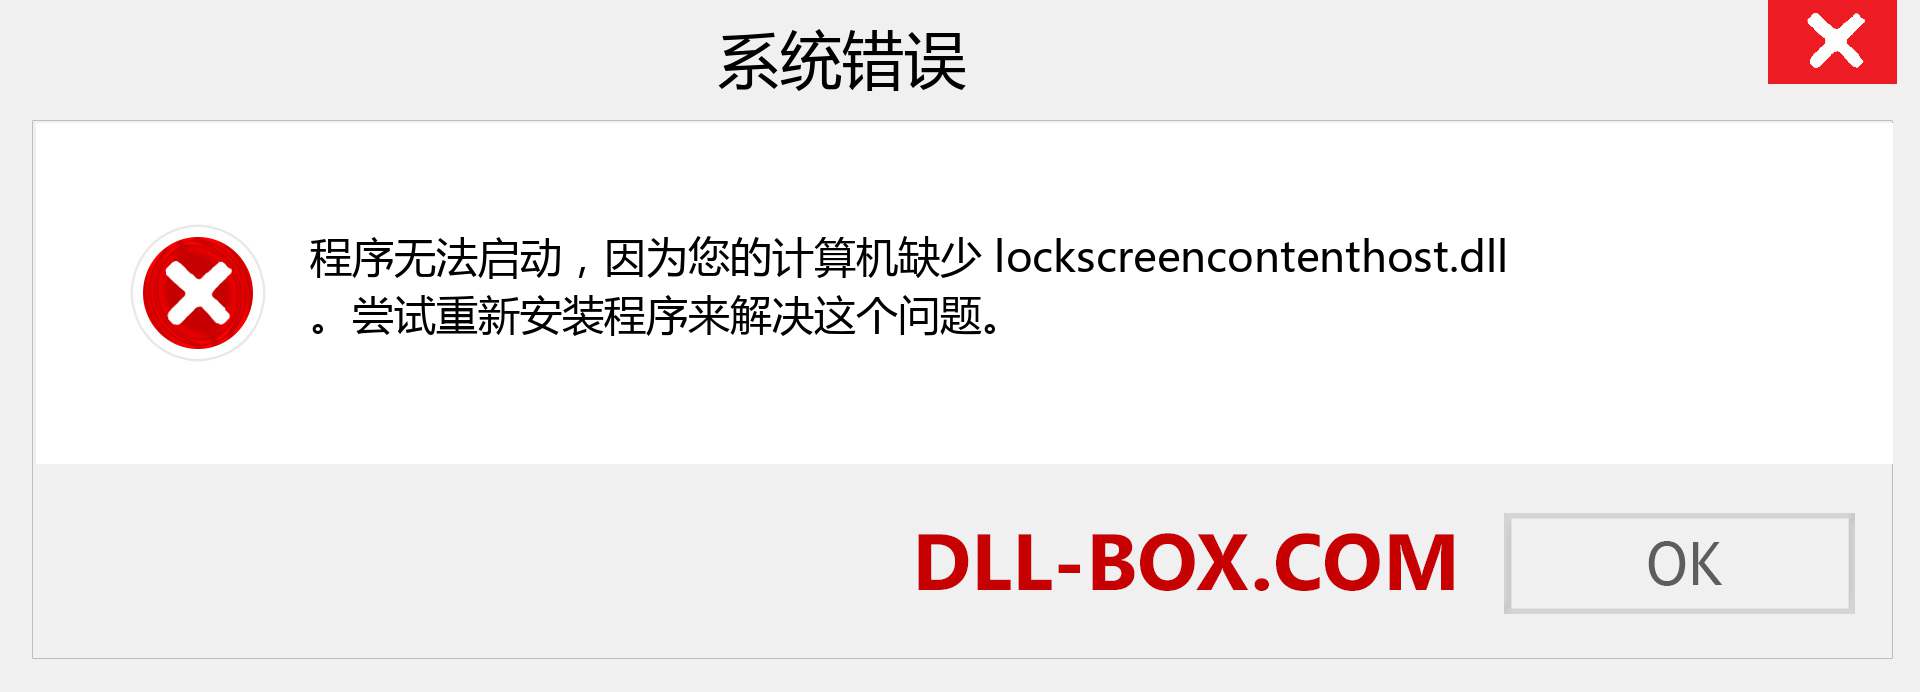 lockscreencontenthost.dll 文件丢失？。 适用于 Windows 7、8、10 的下载 - 修复 Windows、照片、图像上的 lockscreencontenthost dll 丢失错误